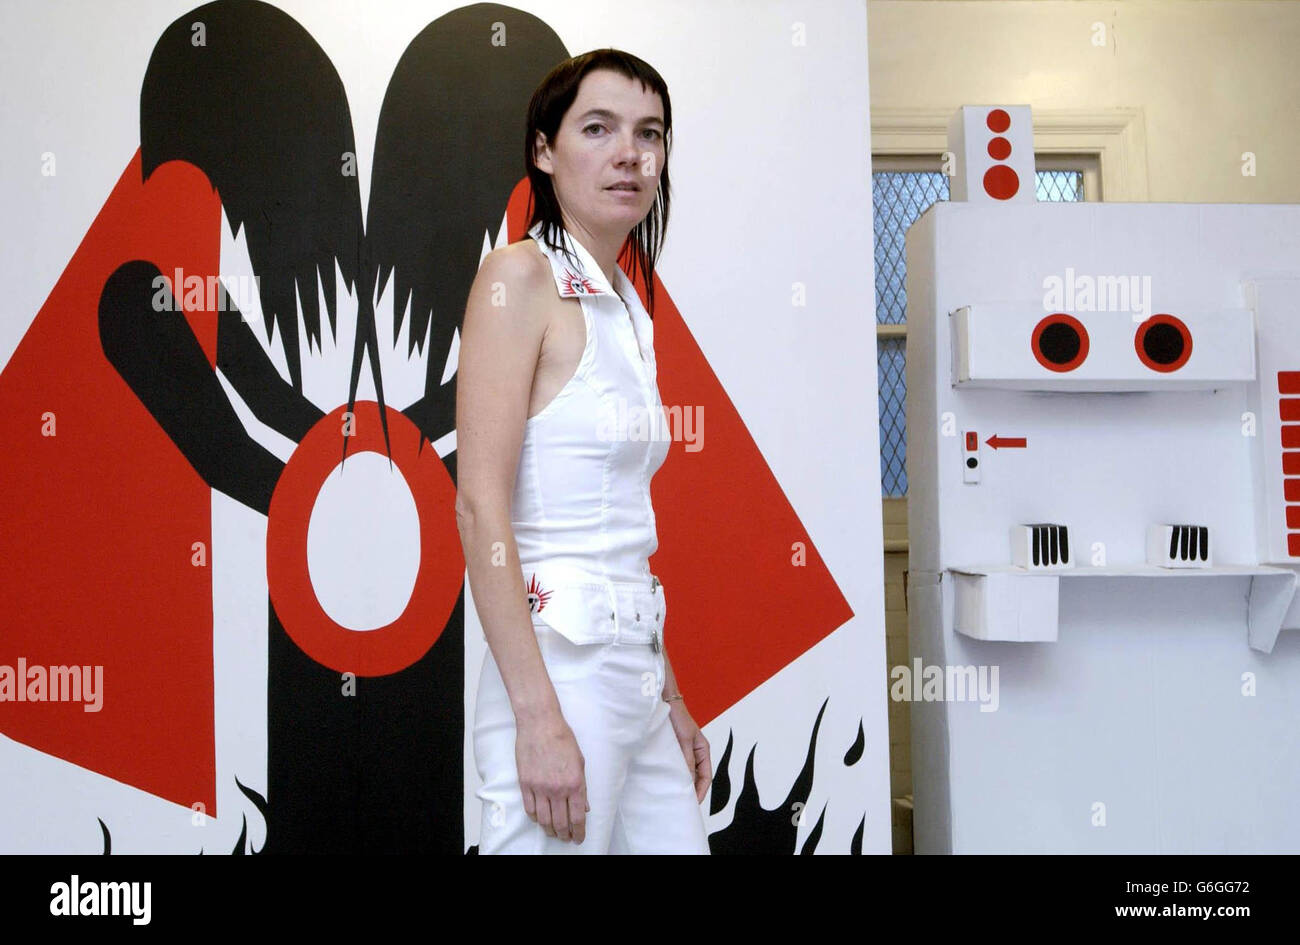 L'artista Antoinette Hachler espone la sua mostra all'apertura della galleria di servizi igienici a Kingston, nel centro di Londra. La convenienza pubblica convertita esporrà film, video e performance art, ed è destinata a diventare una vetrina importante per i giovani artisti britannici. Foto Stock